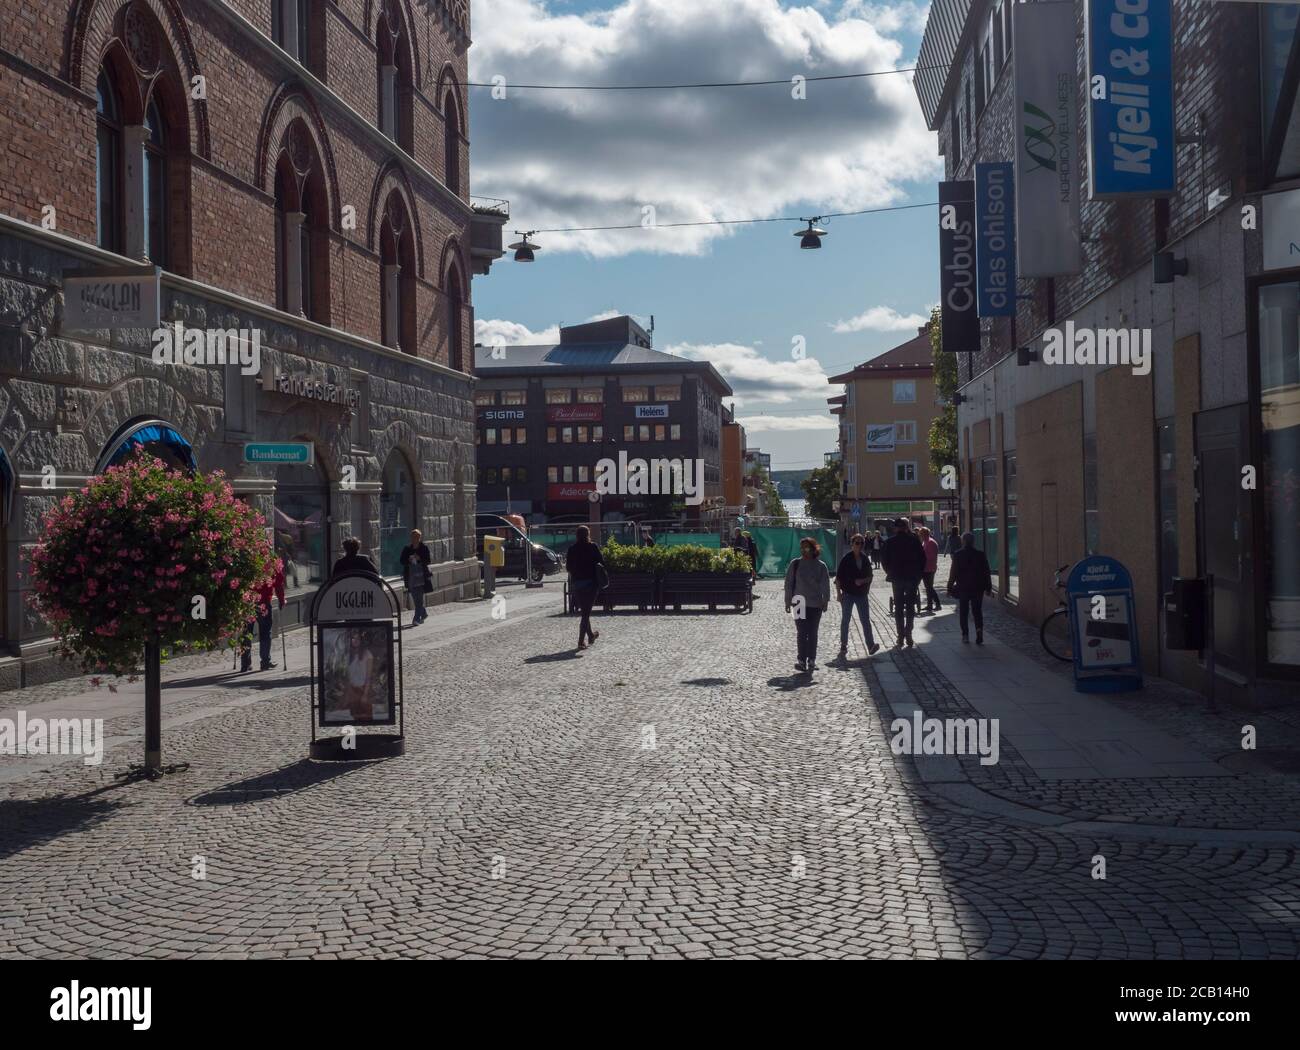 Ornskoldsvik, Suède, 6 septembre 2019 : rue au centre de la ville d'Ornskoldsvik avec des bâtiments historiques, des magasins et des personnes à pied. Nord de la Suède Banque D'Images